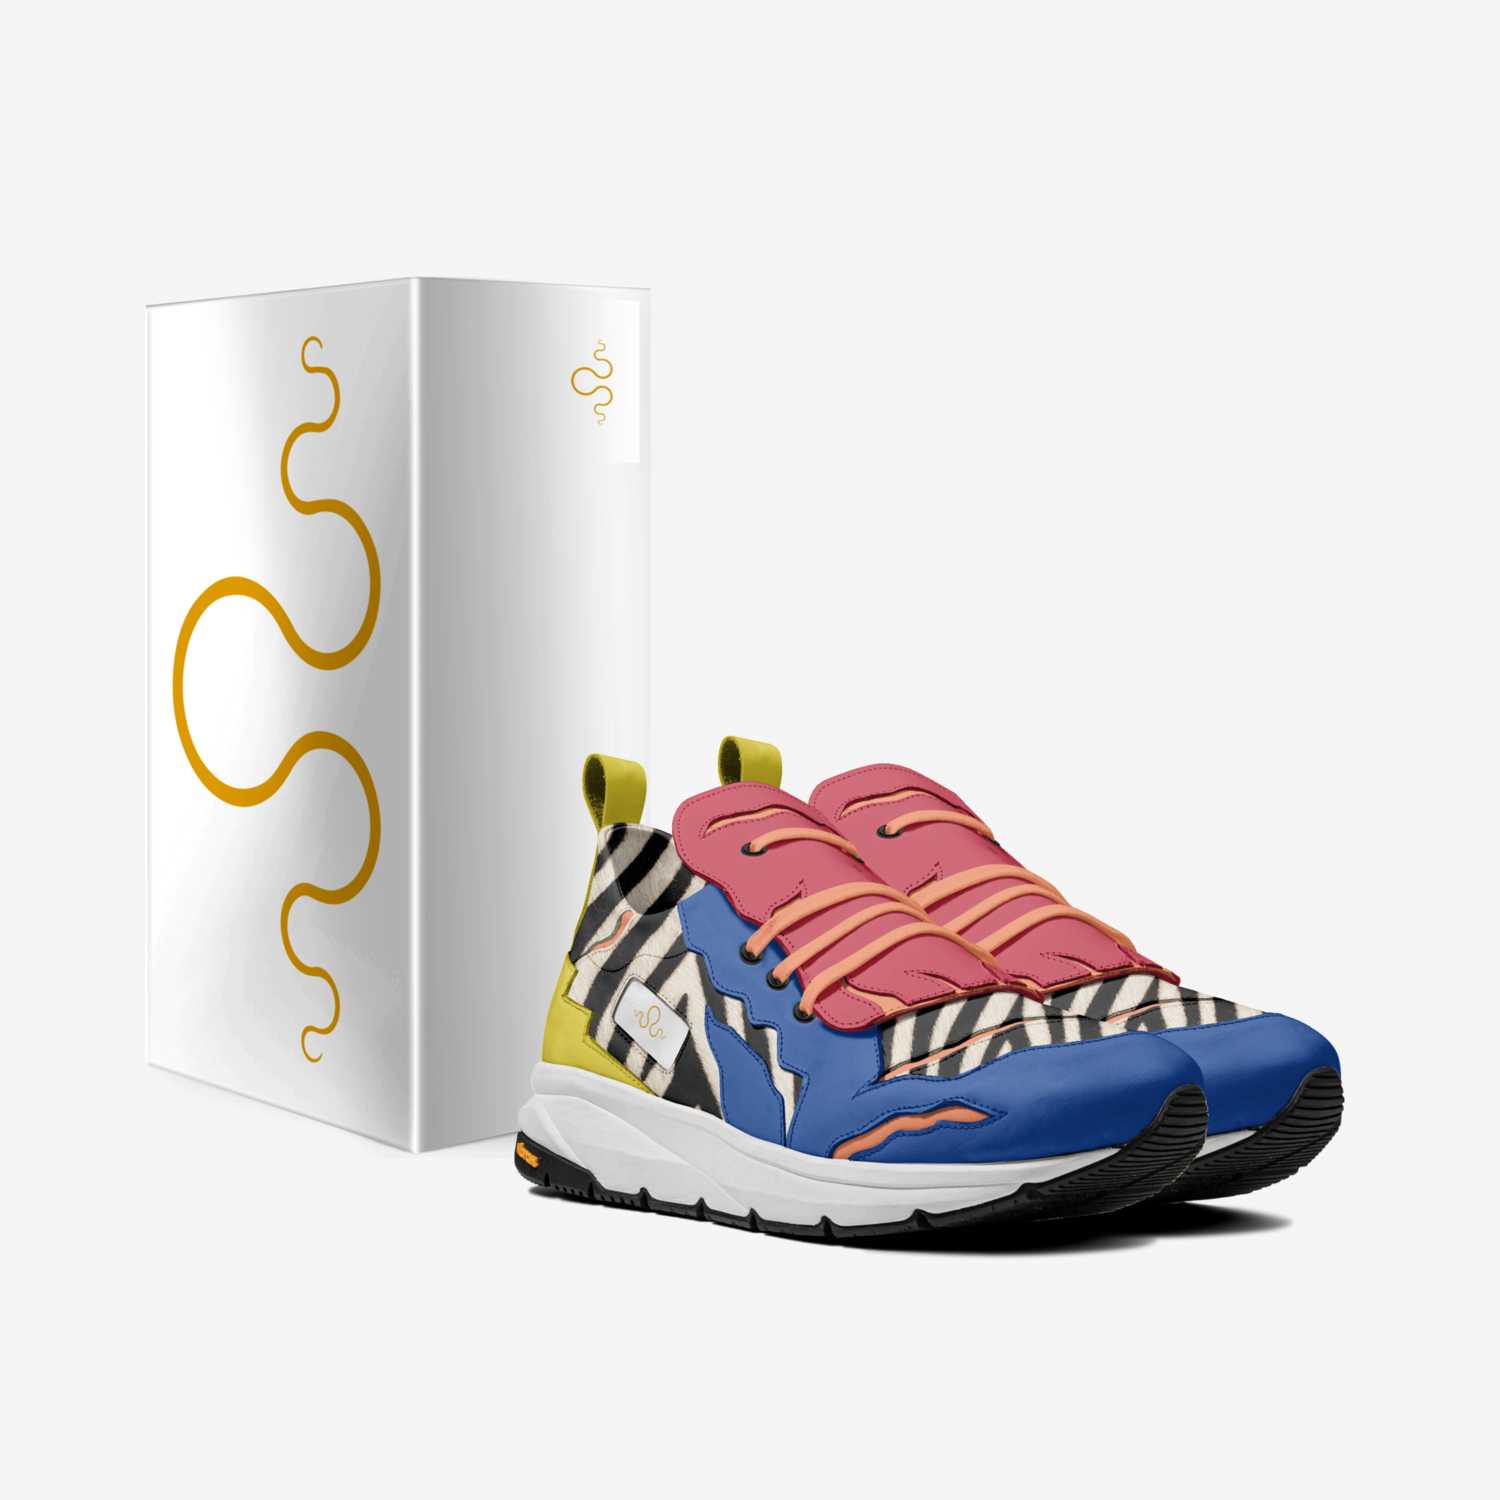 Kraken 3 custom made in Italy shoes by Carlos Segarra | Box view